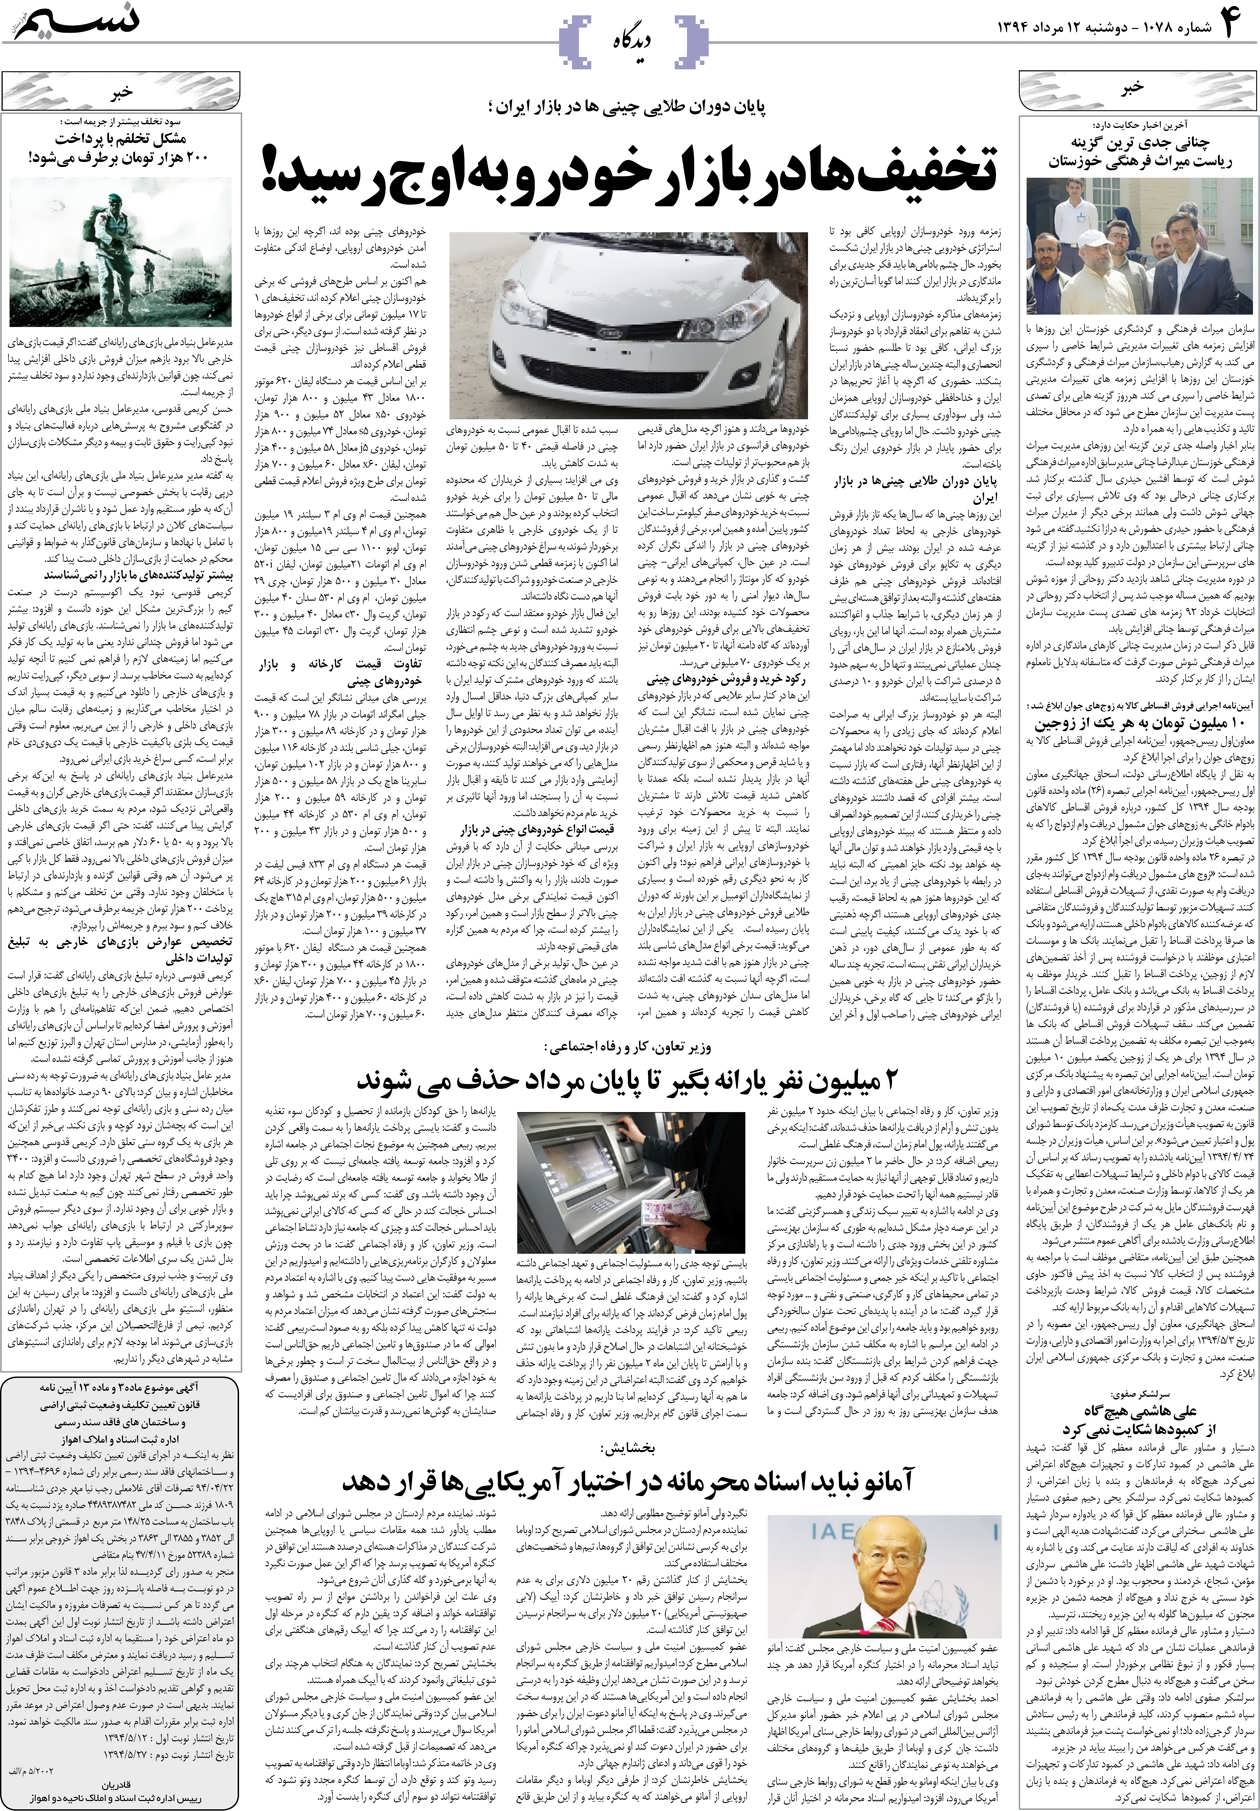 صفحه دیدگاه روزنامه نسیم شماره 1078